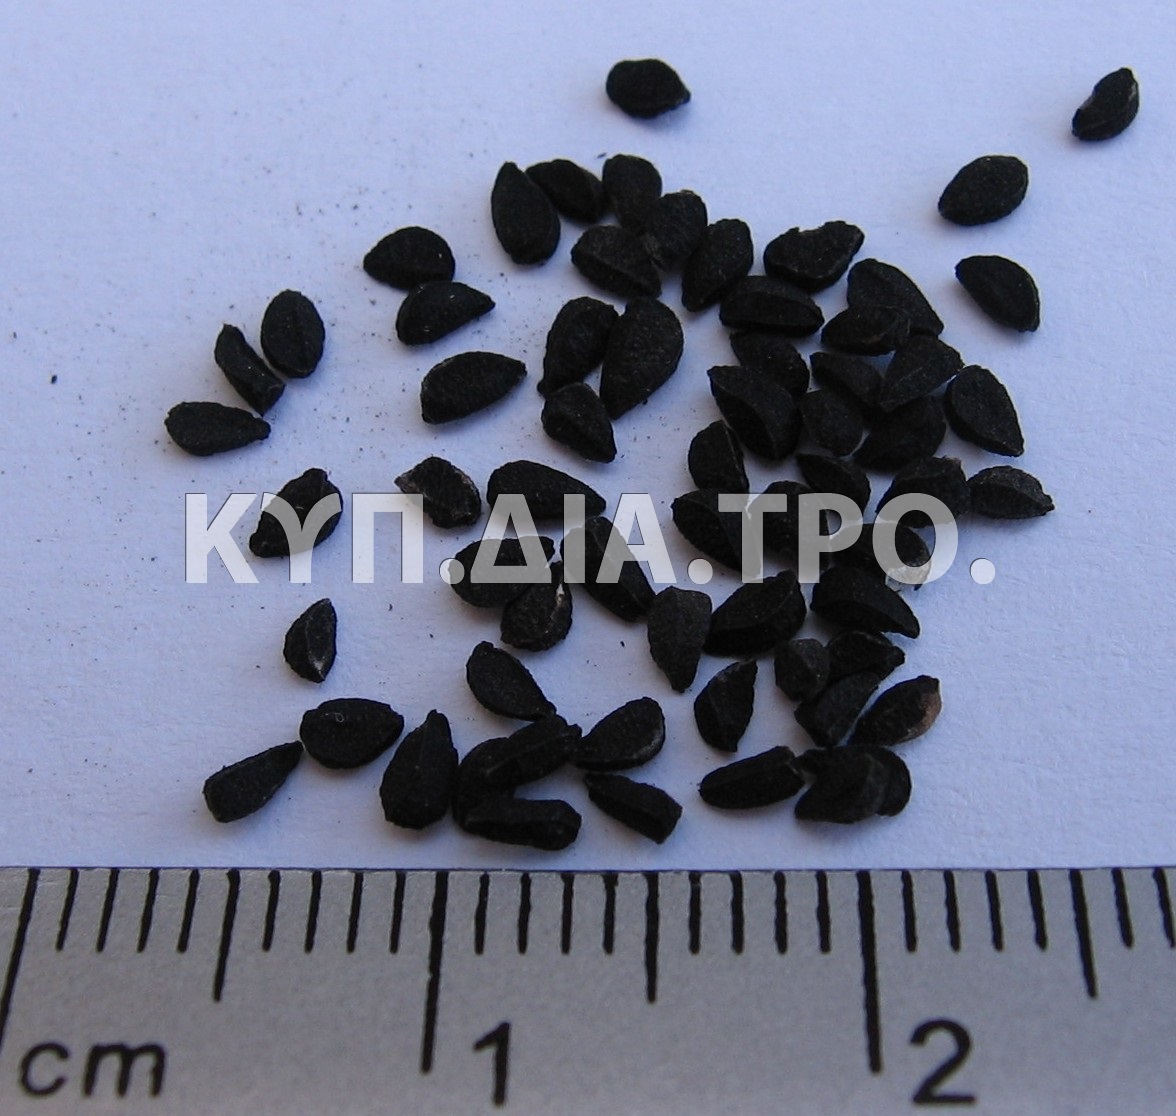 Σπόροι μαυρόκοκκου <br/> Πηγή: http://en.wikipedia.org/wiki/File:Nigella_Sativa_Seed.jpg.